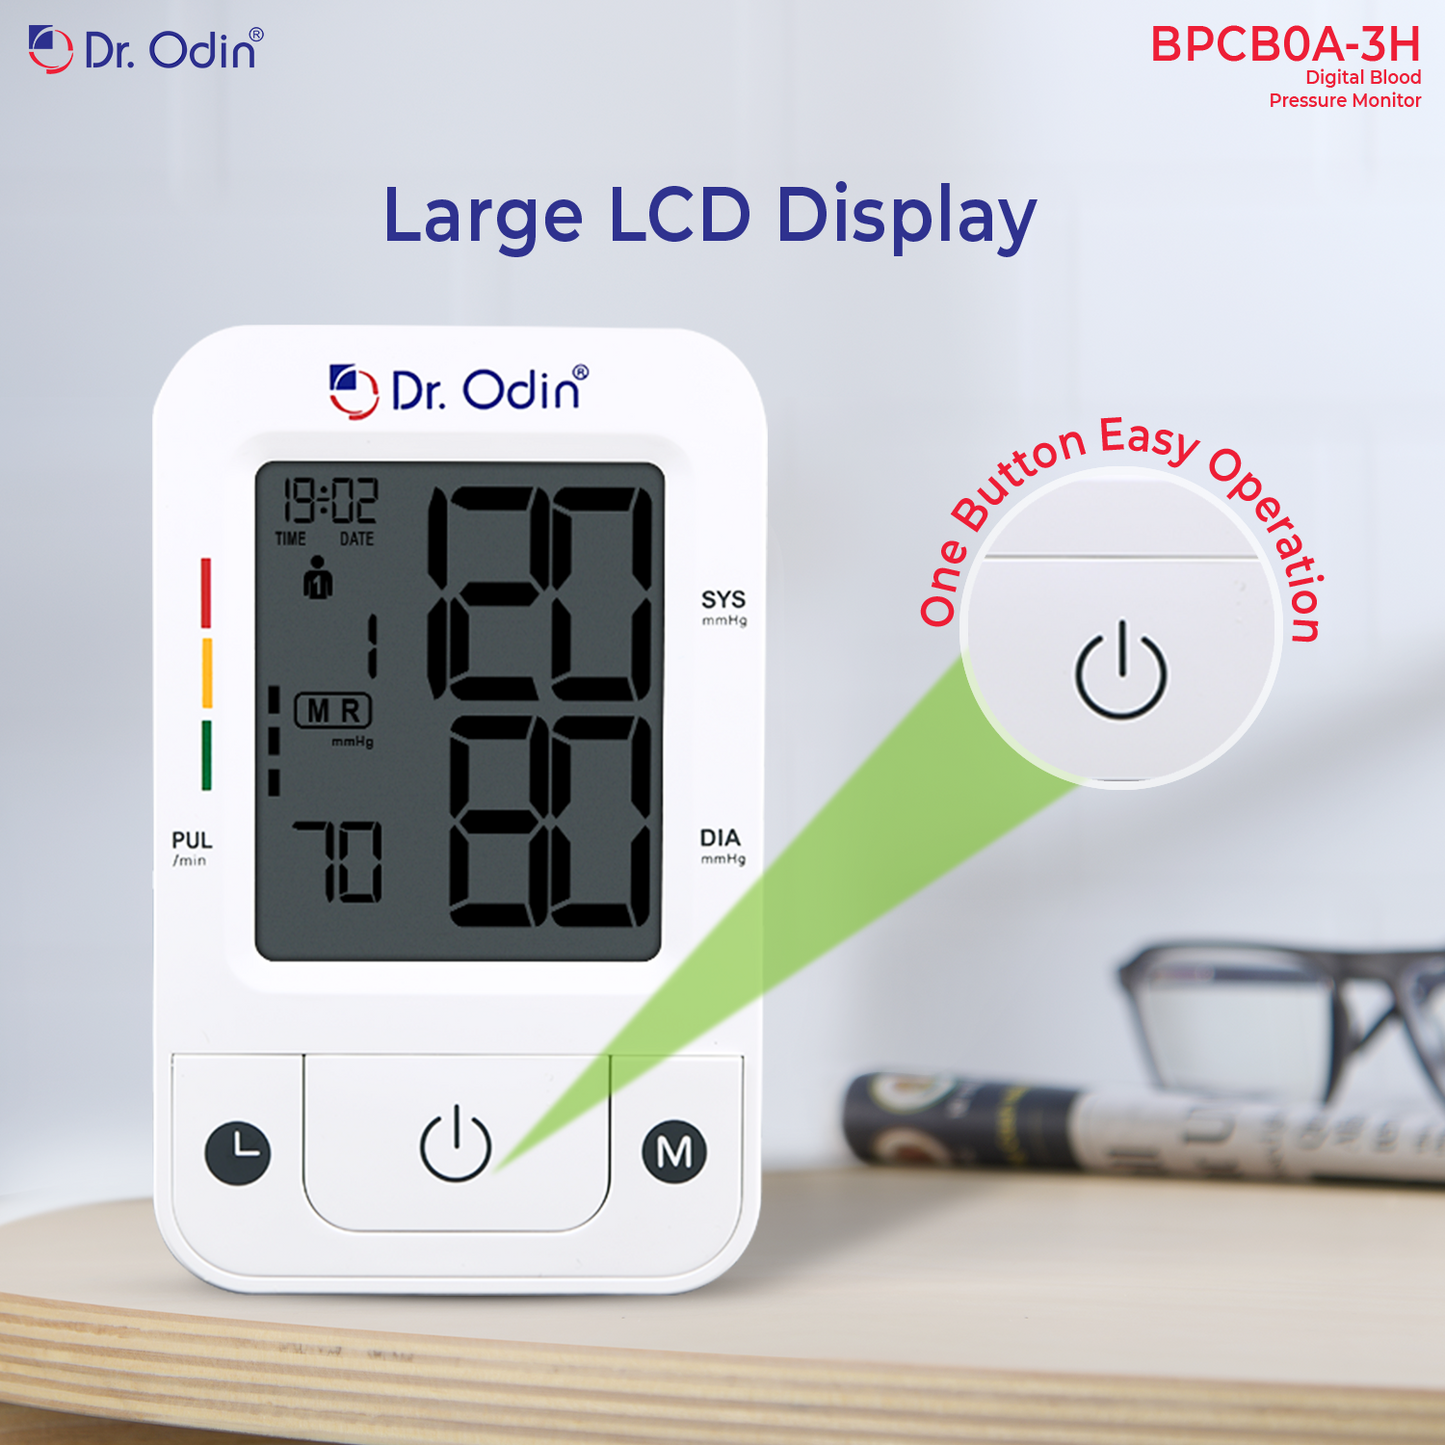 Blood Pressure Monitor BPCBOA-3H